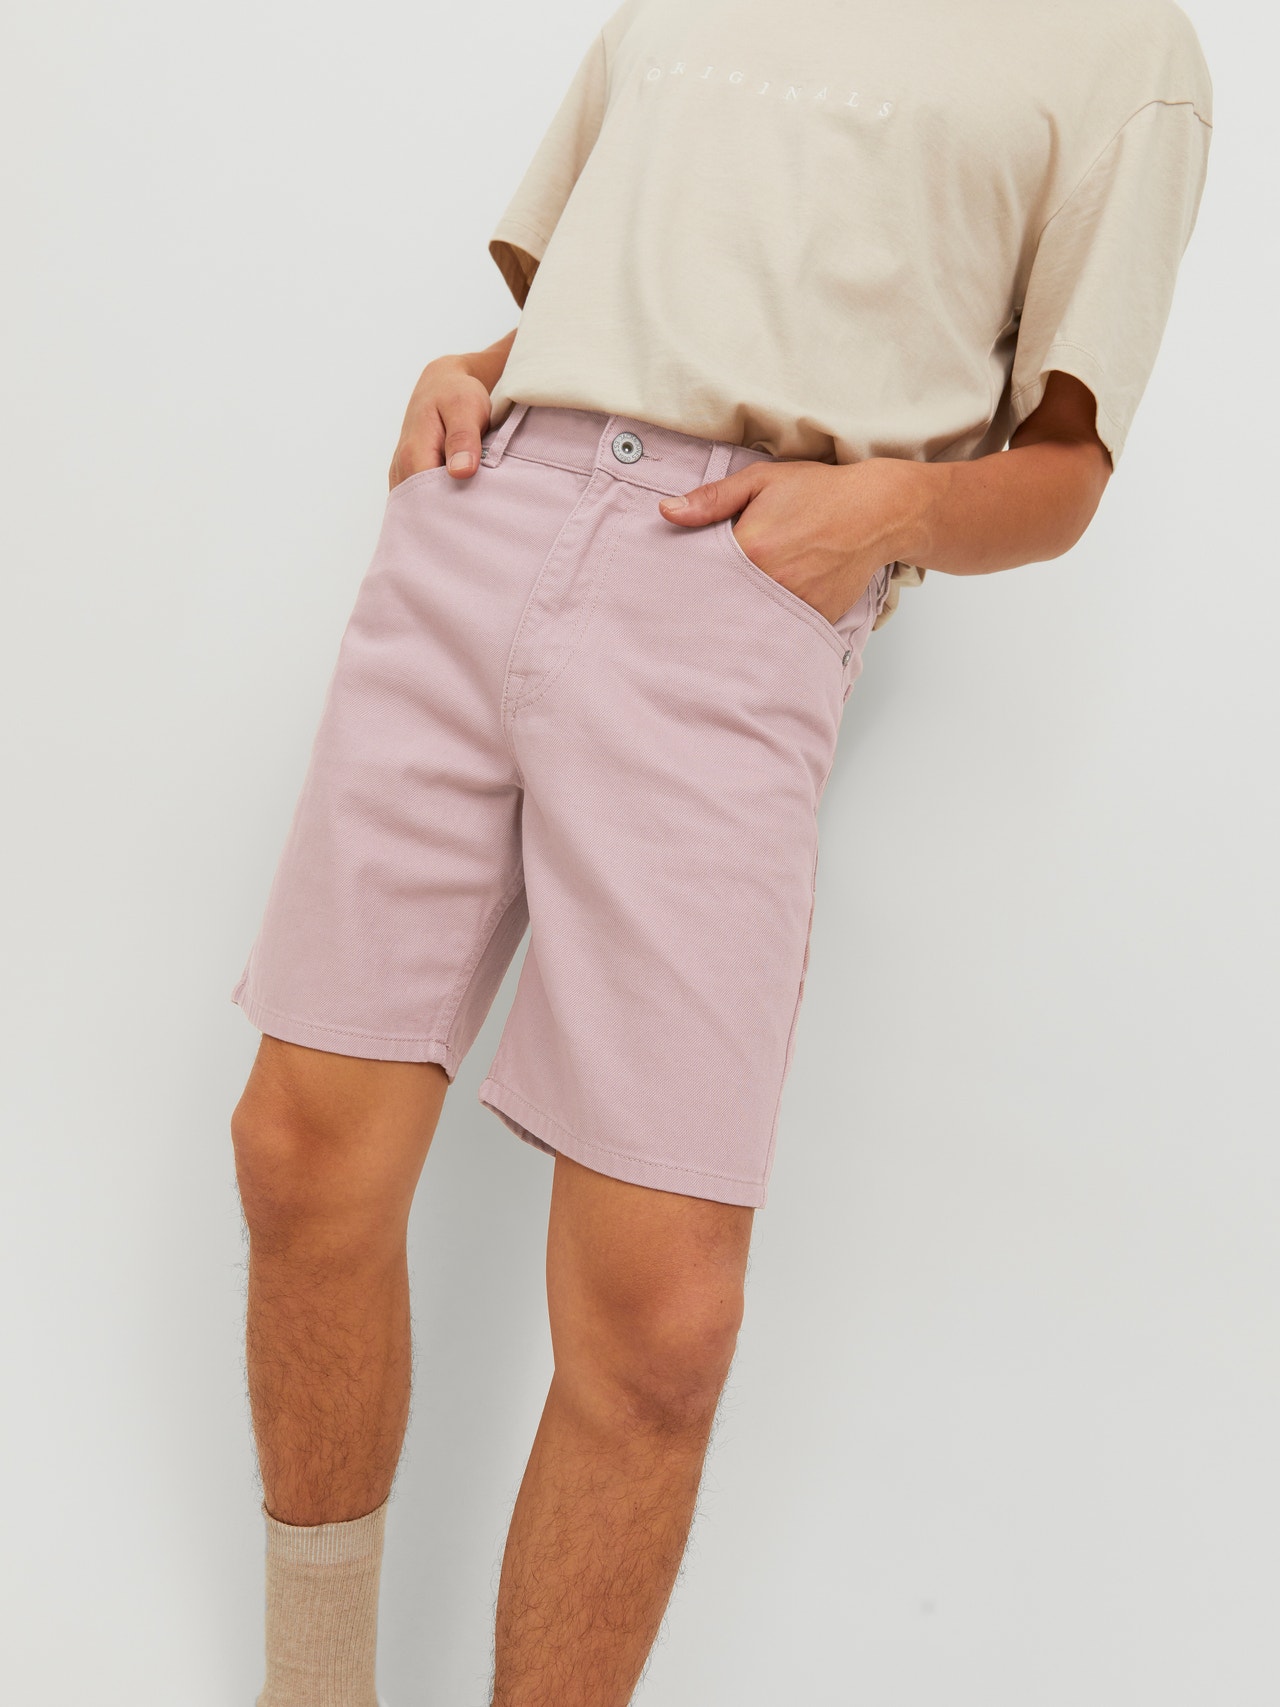 Jack & Jones Relaxed Fit Denim shorts -Deauville Mauve - 12229805